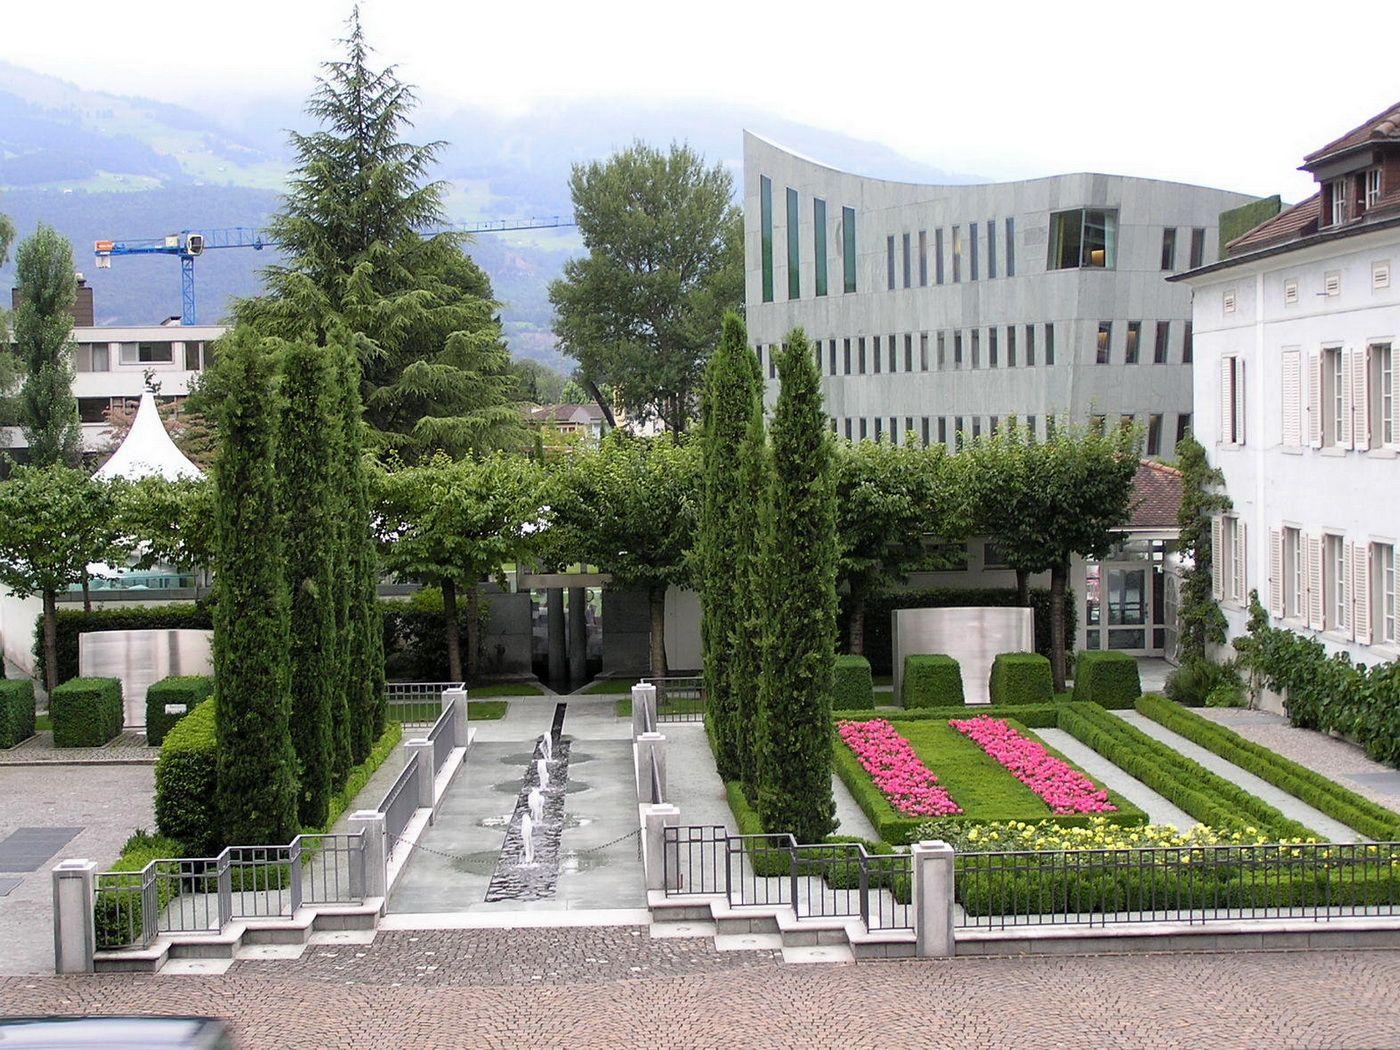 Vaduz.Liechtenstein Cities Landscape design